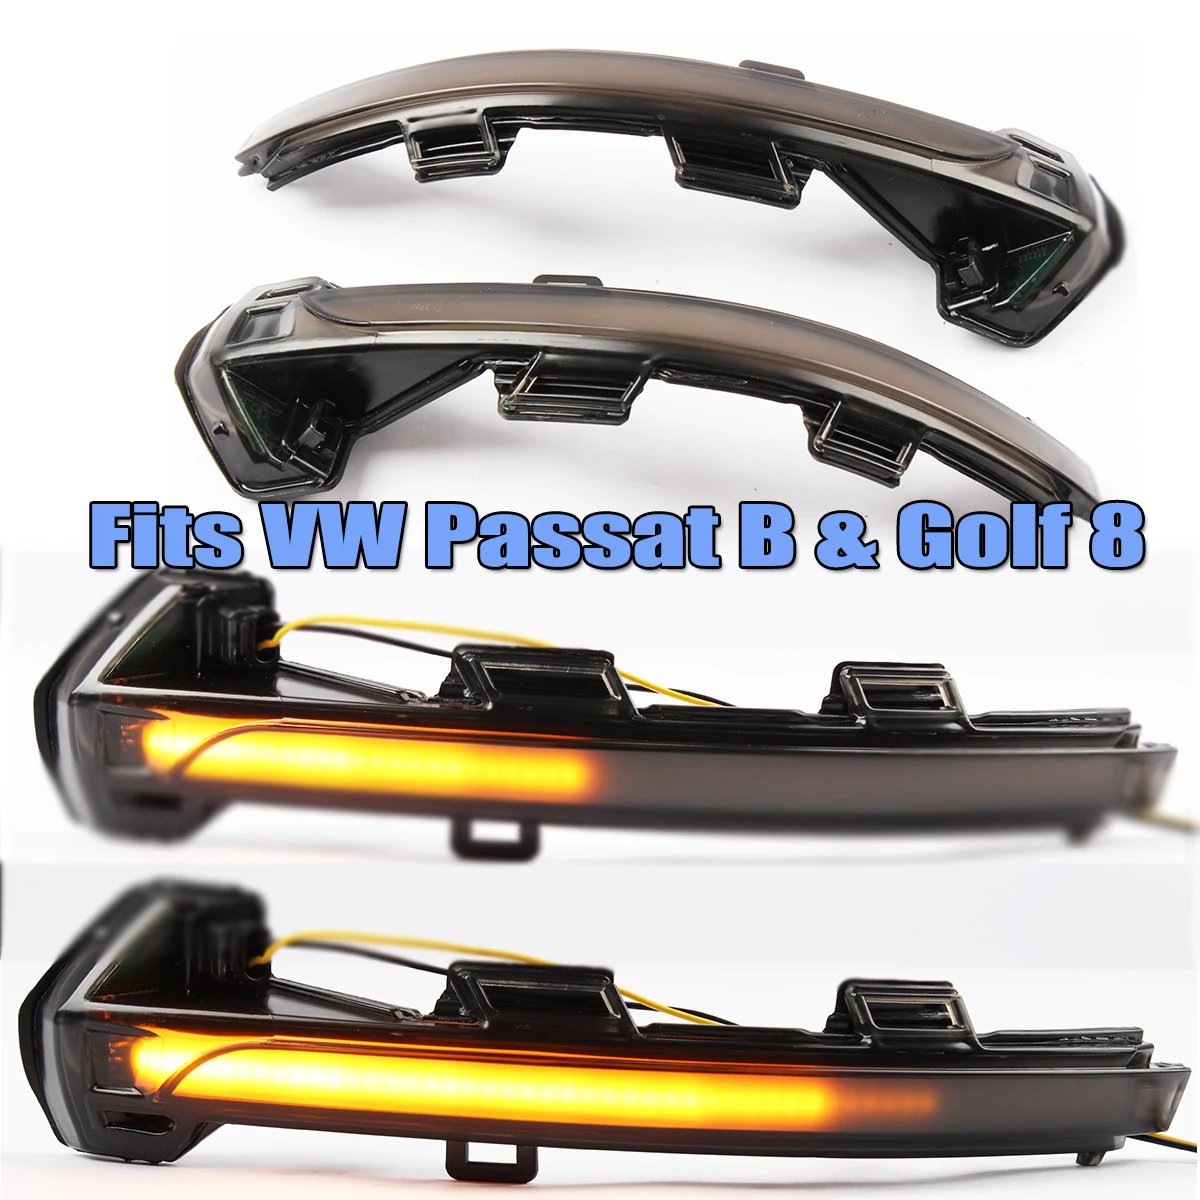 

Пара светодиодных боковых зеркал, динамический сигнал поворота, индикатор сигнала поворота, лампа для ретранслятора для Passat B8 G4 Arteron Golf MK8 ID.3